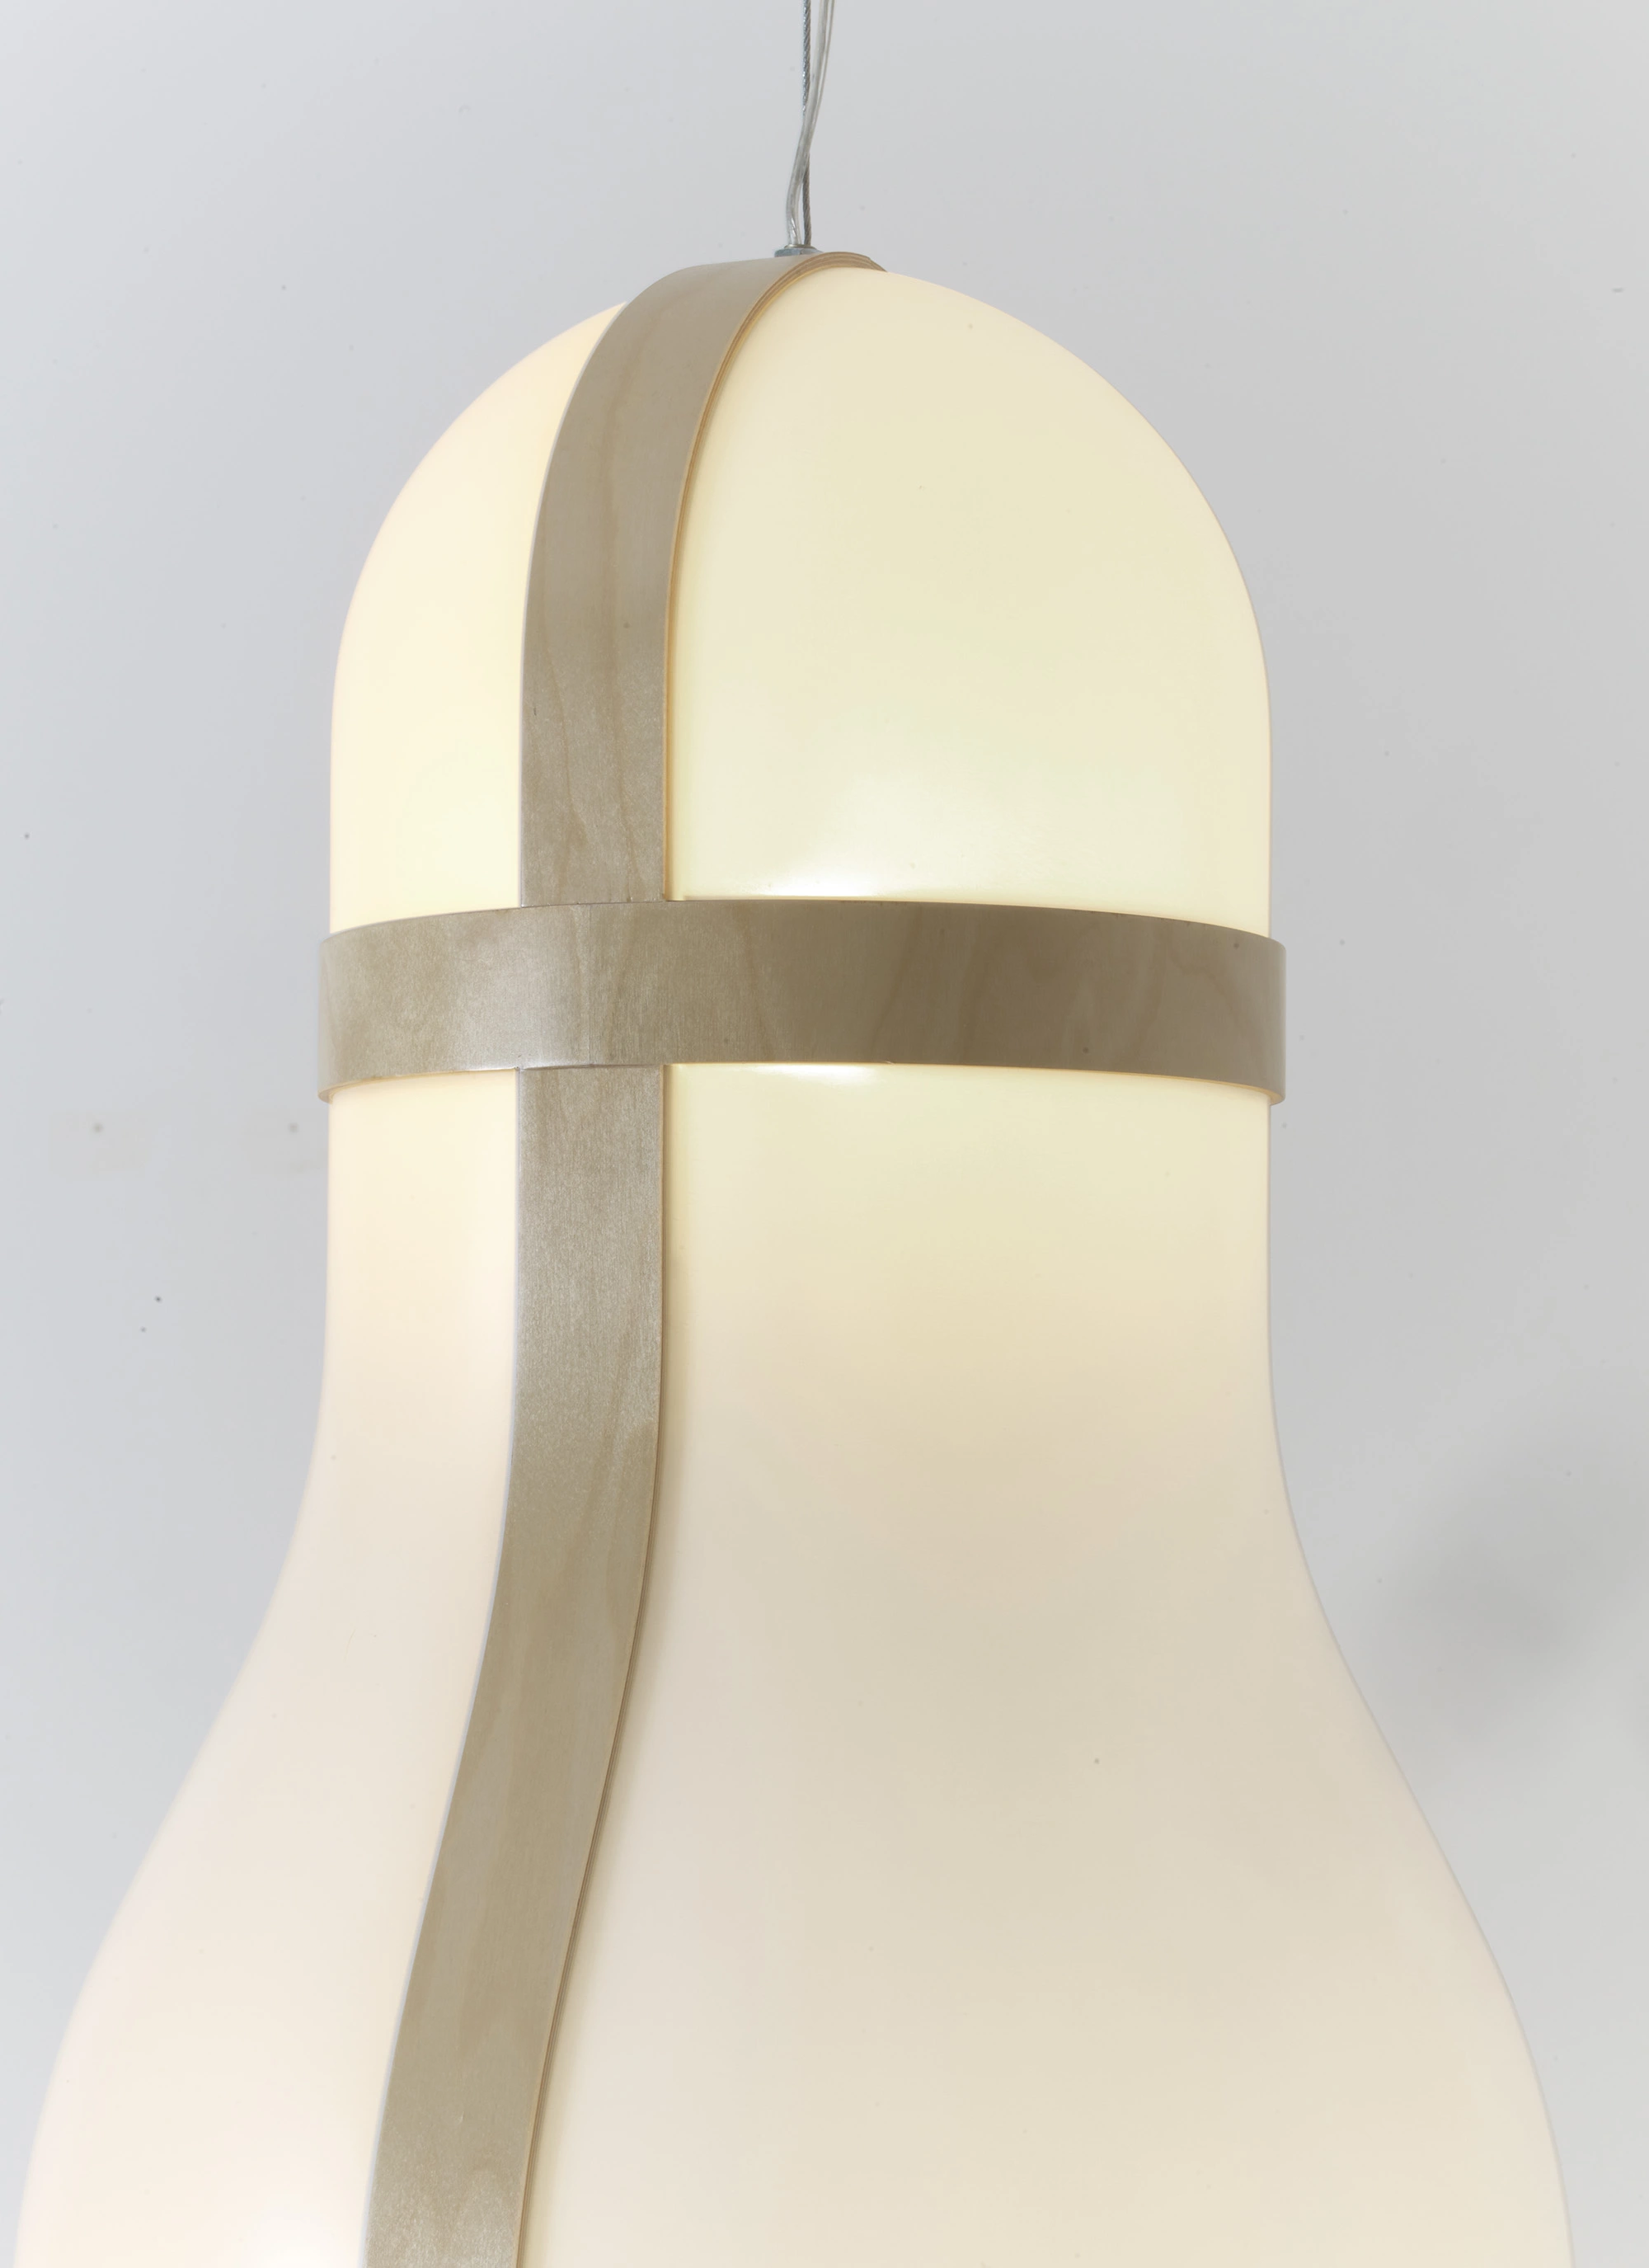 Objet Lumineux - small model - Ronan & Erwan Bouroullec - Pendant light - Galerie kreo